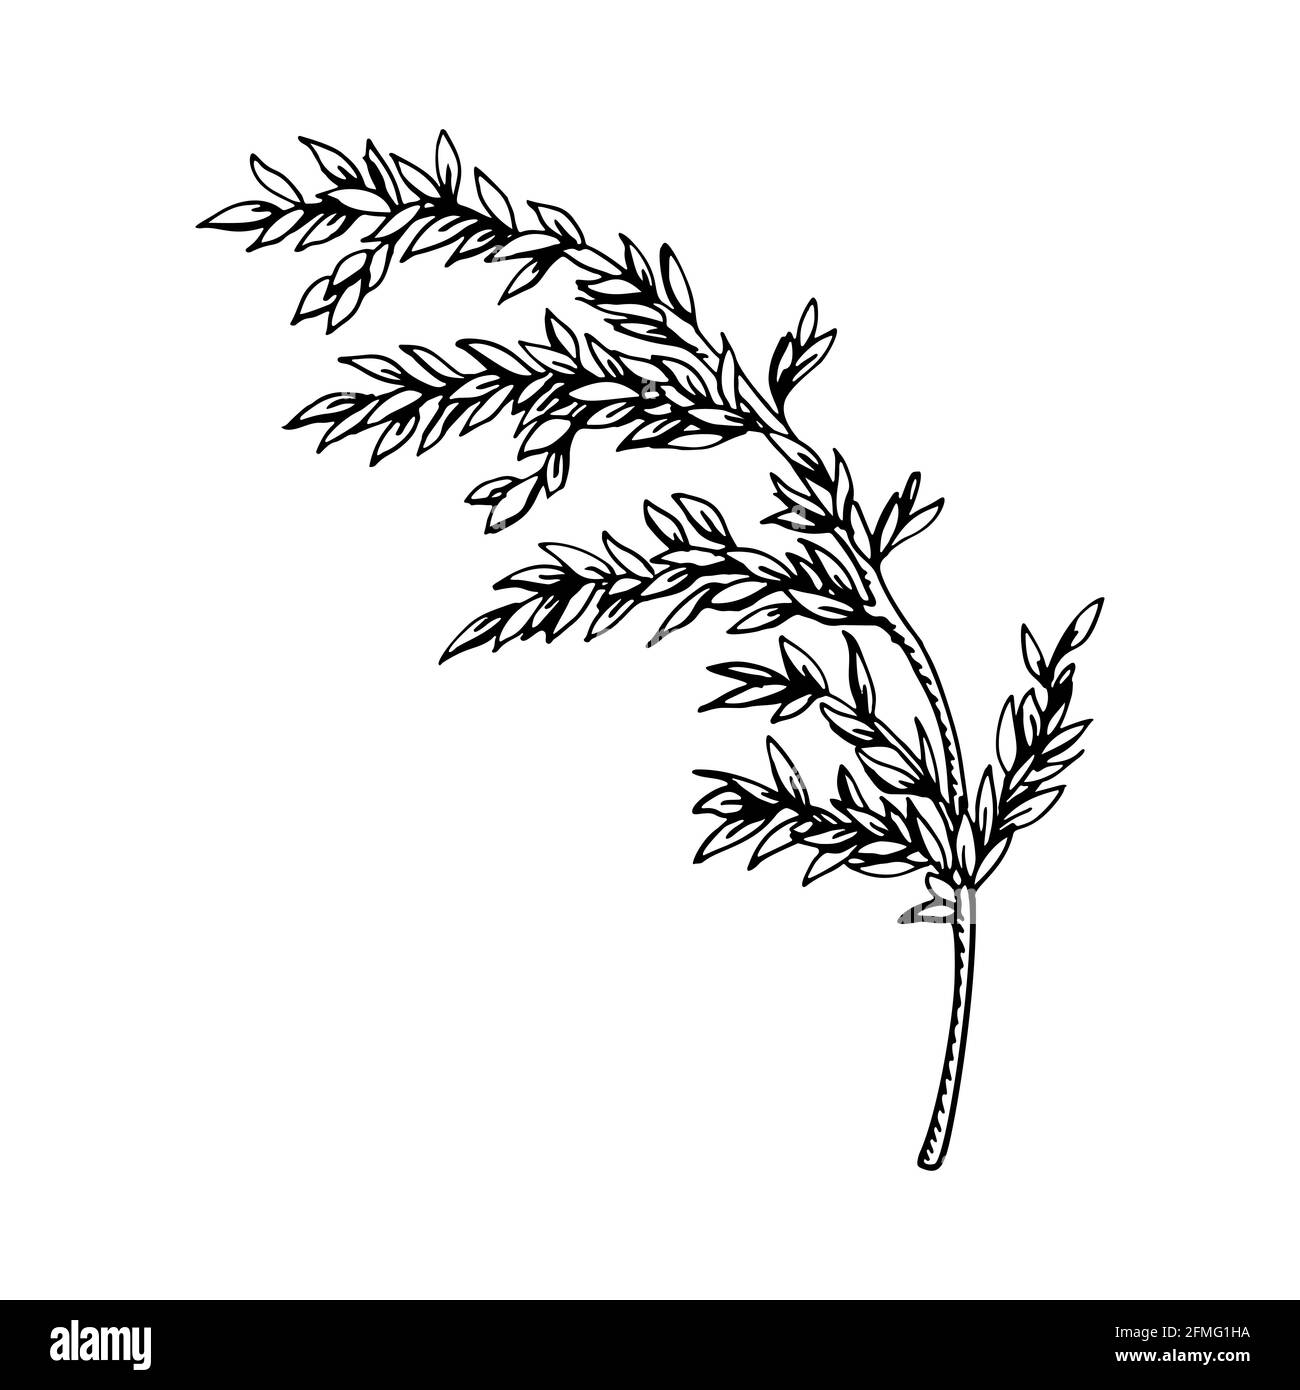 Handgezeichneter Zweig mit Blättern isoliert auf weiß. Vektorgrafik im Skizzenstil. Stock Vektor